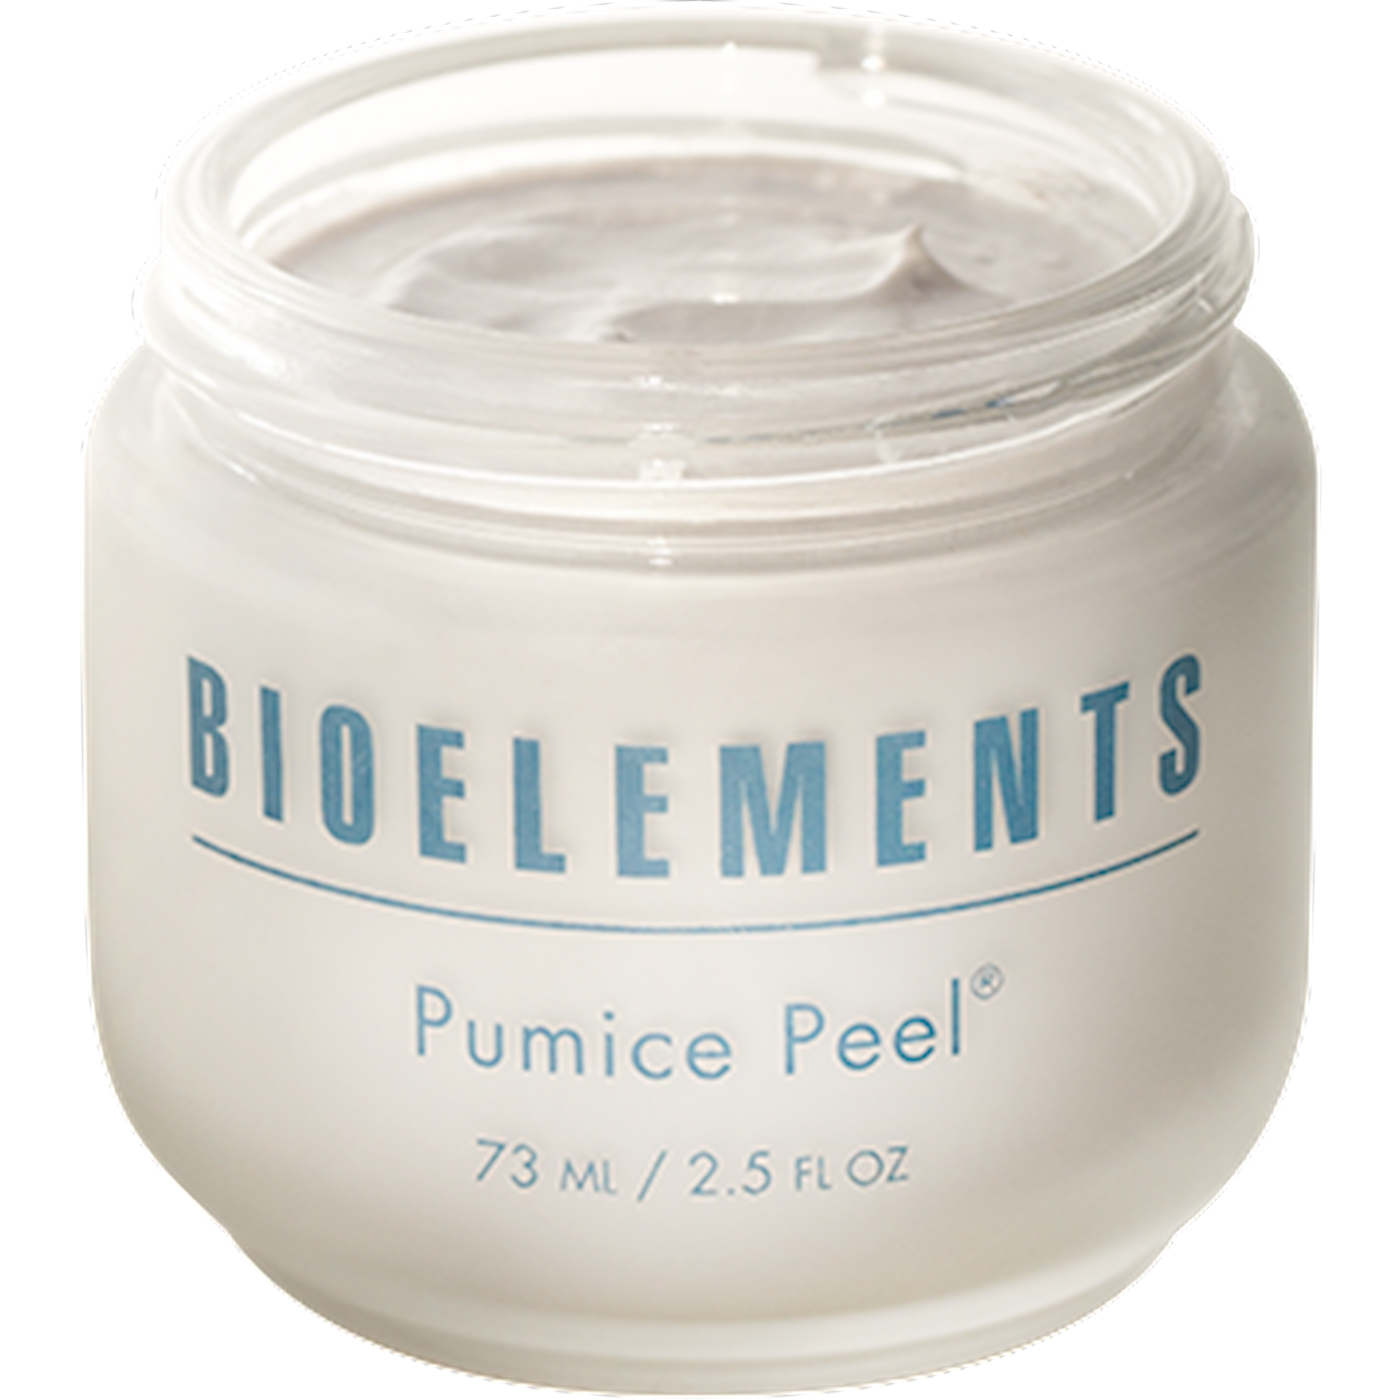 Pumice Peel 2.5 fl oz Curated Wellness